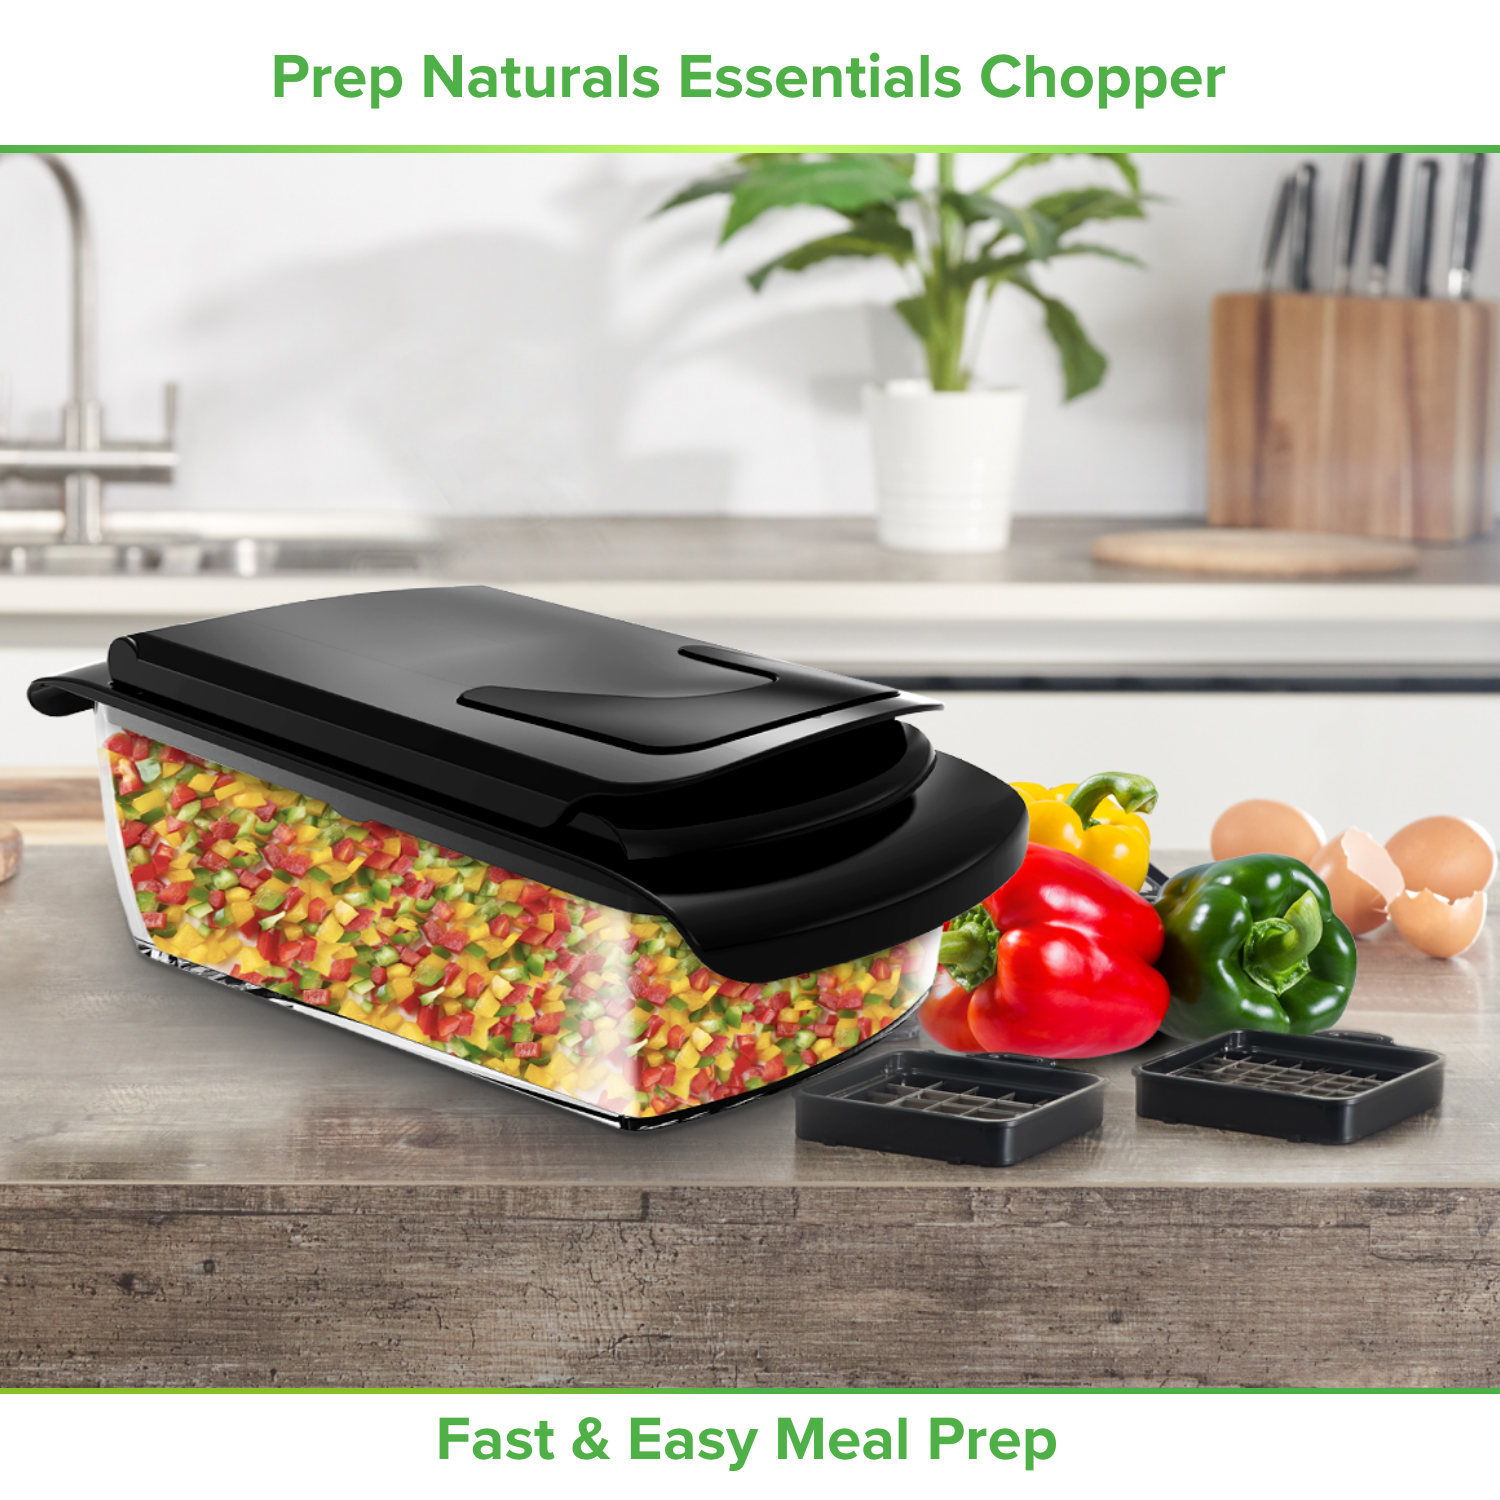 chopped capsicum by PrepNaturals Essentials Entry Chopper